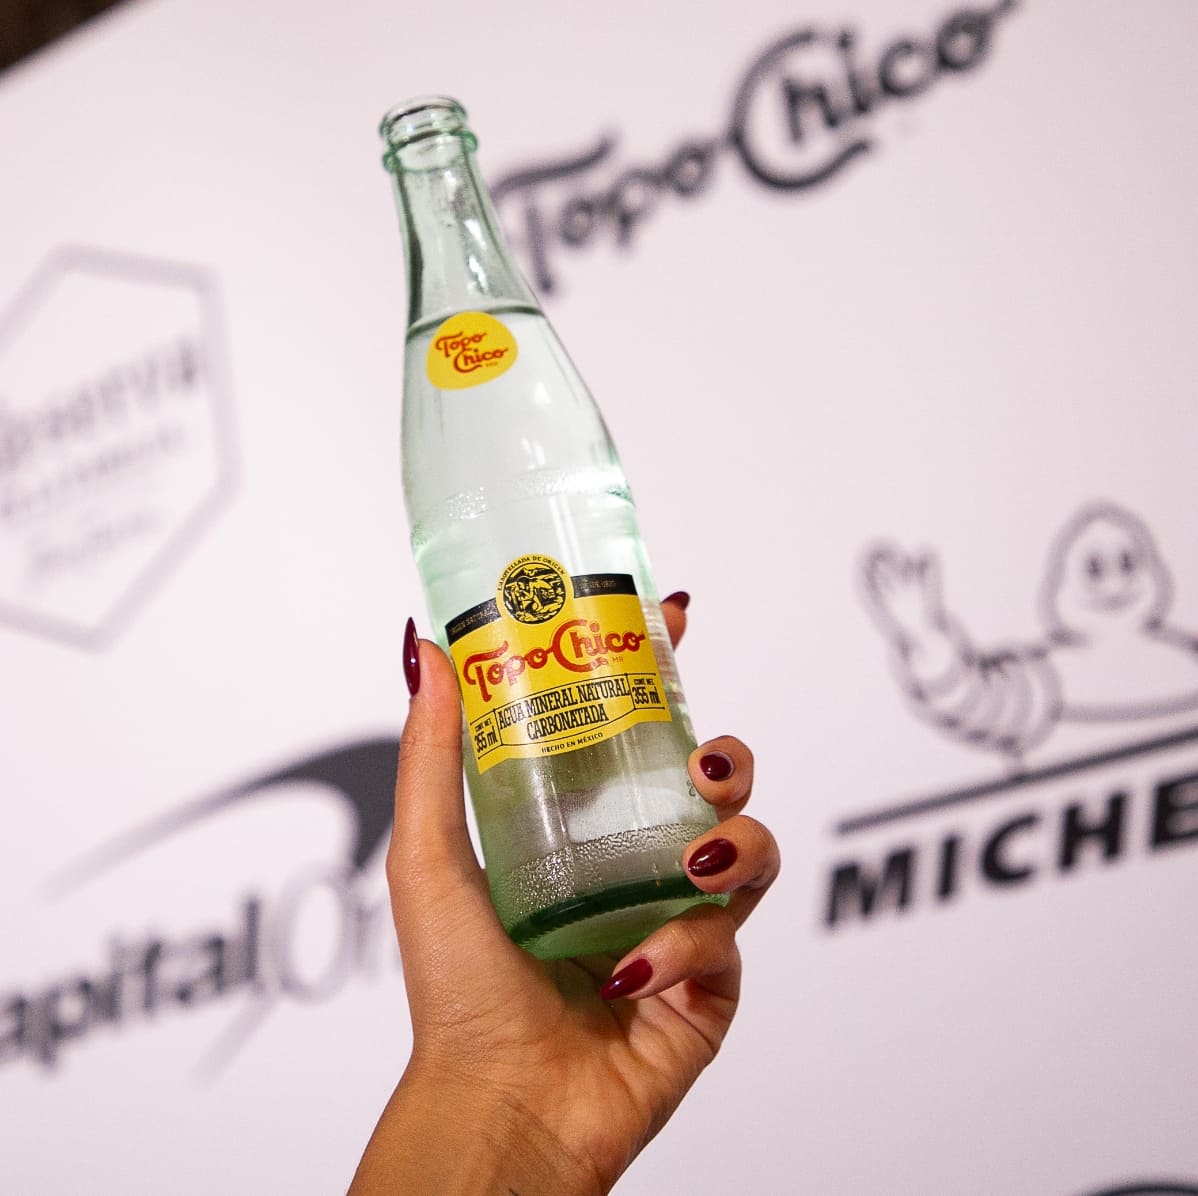 Una mano sostiene una botella de Topo Chico. En el fondo se observa una gráfica con los logos de Topo Chico y Michelin.